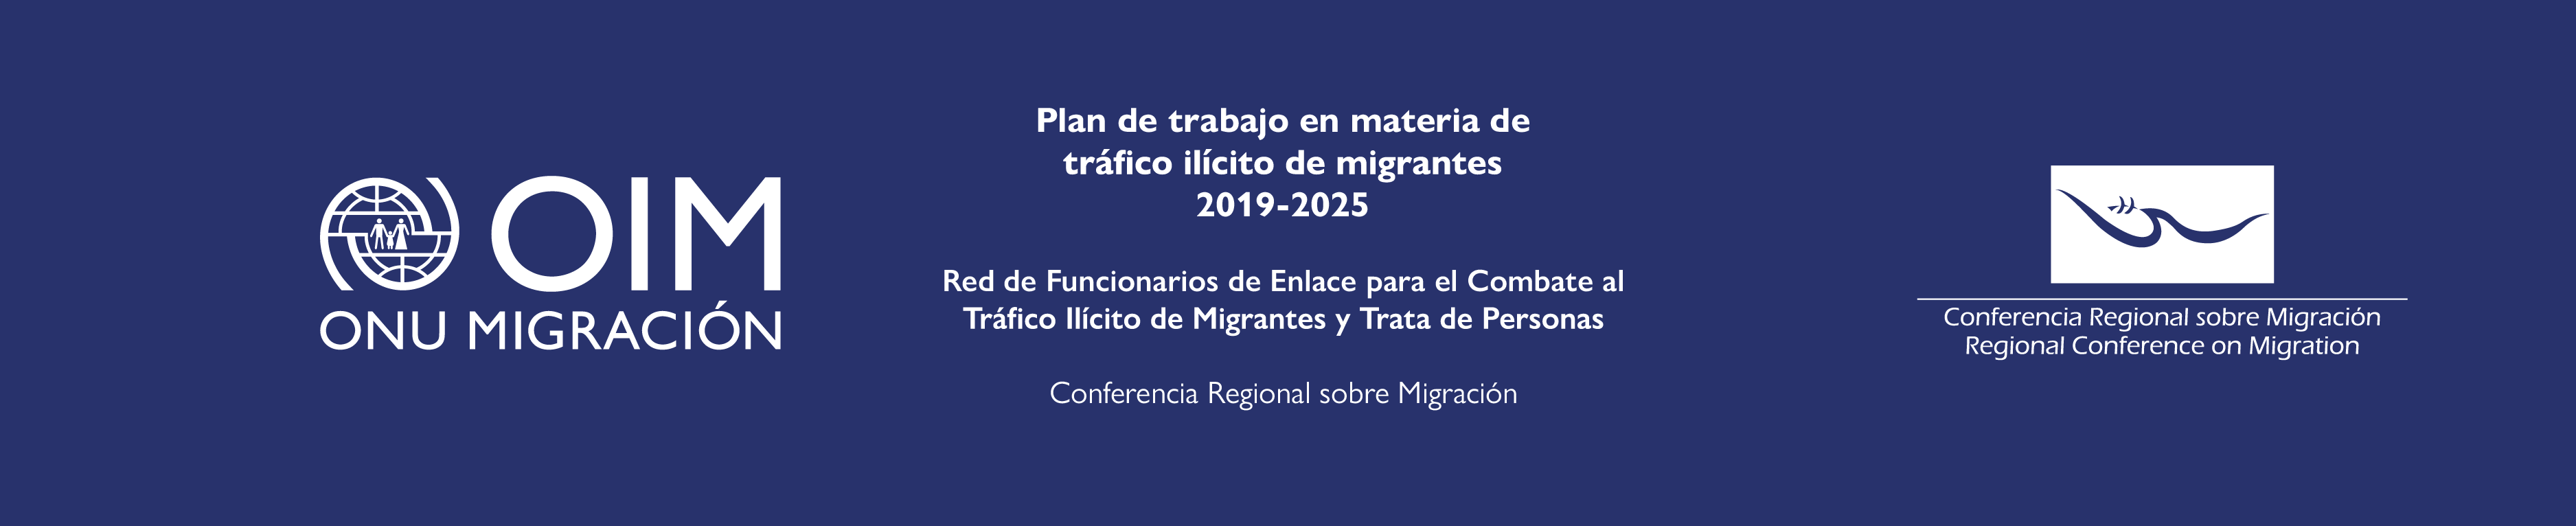 Plan de trabajo en materia de tráfico ilícito de migrantes